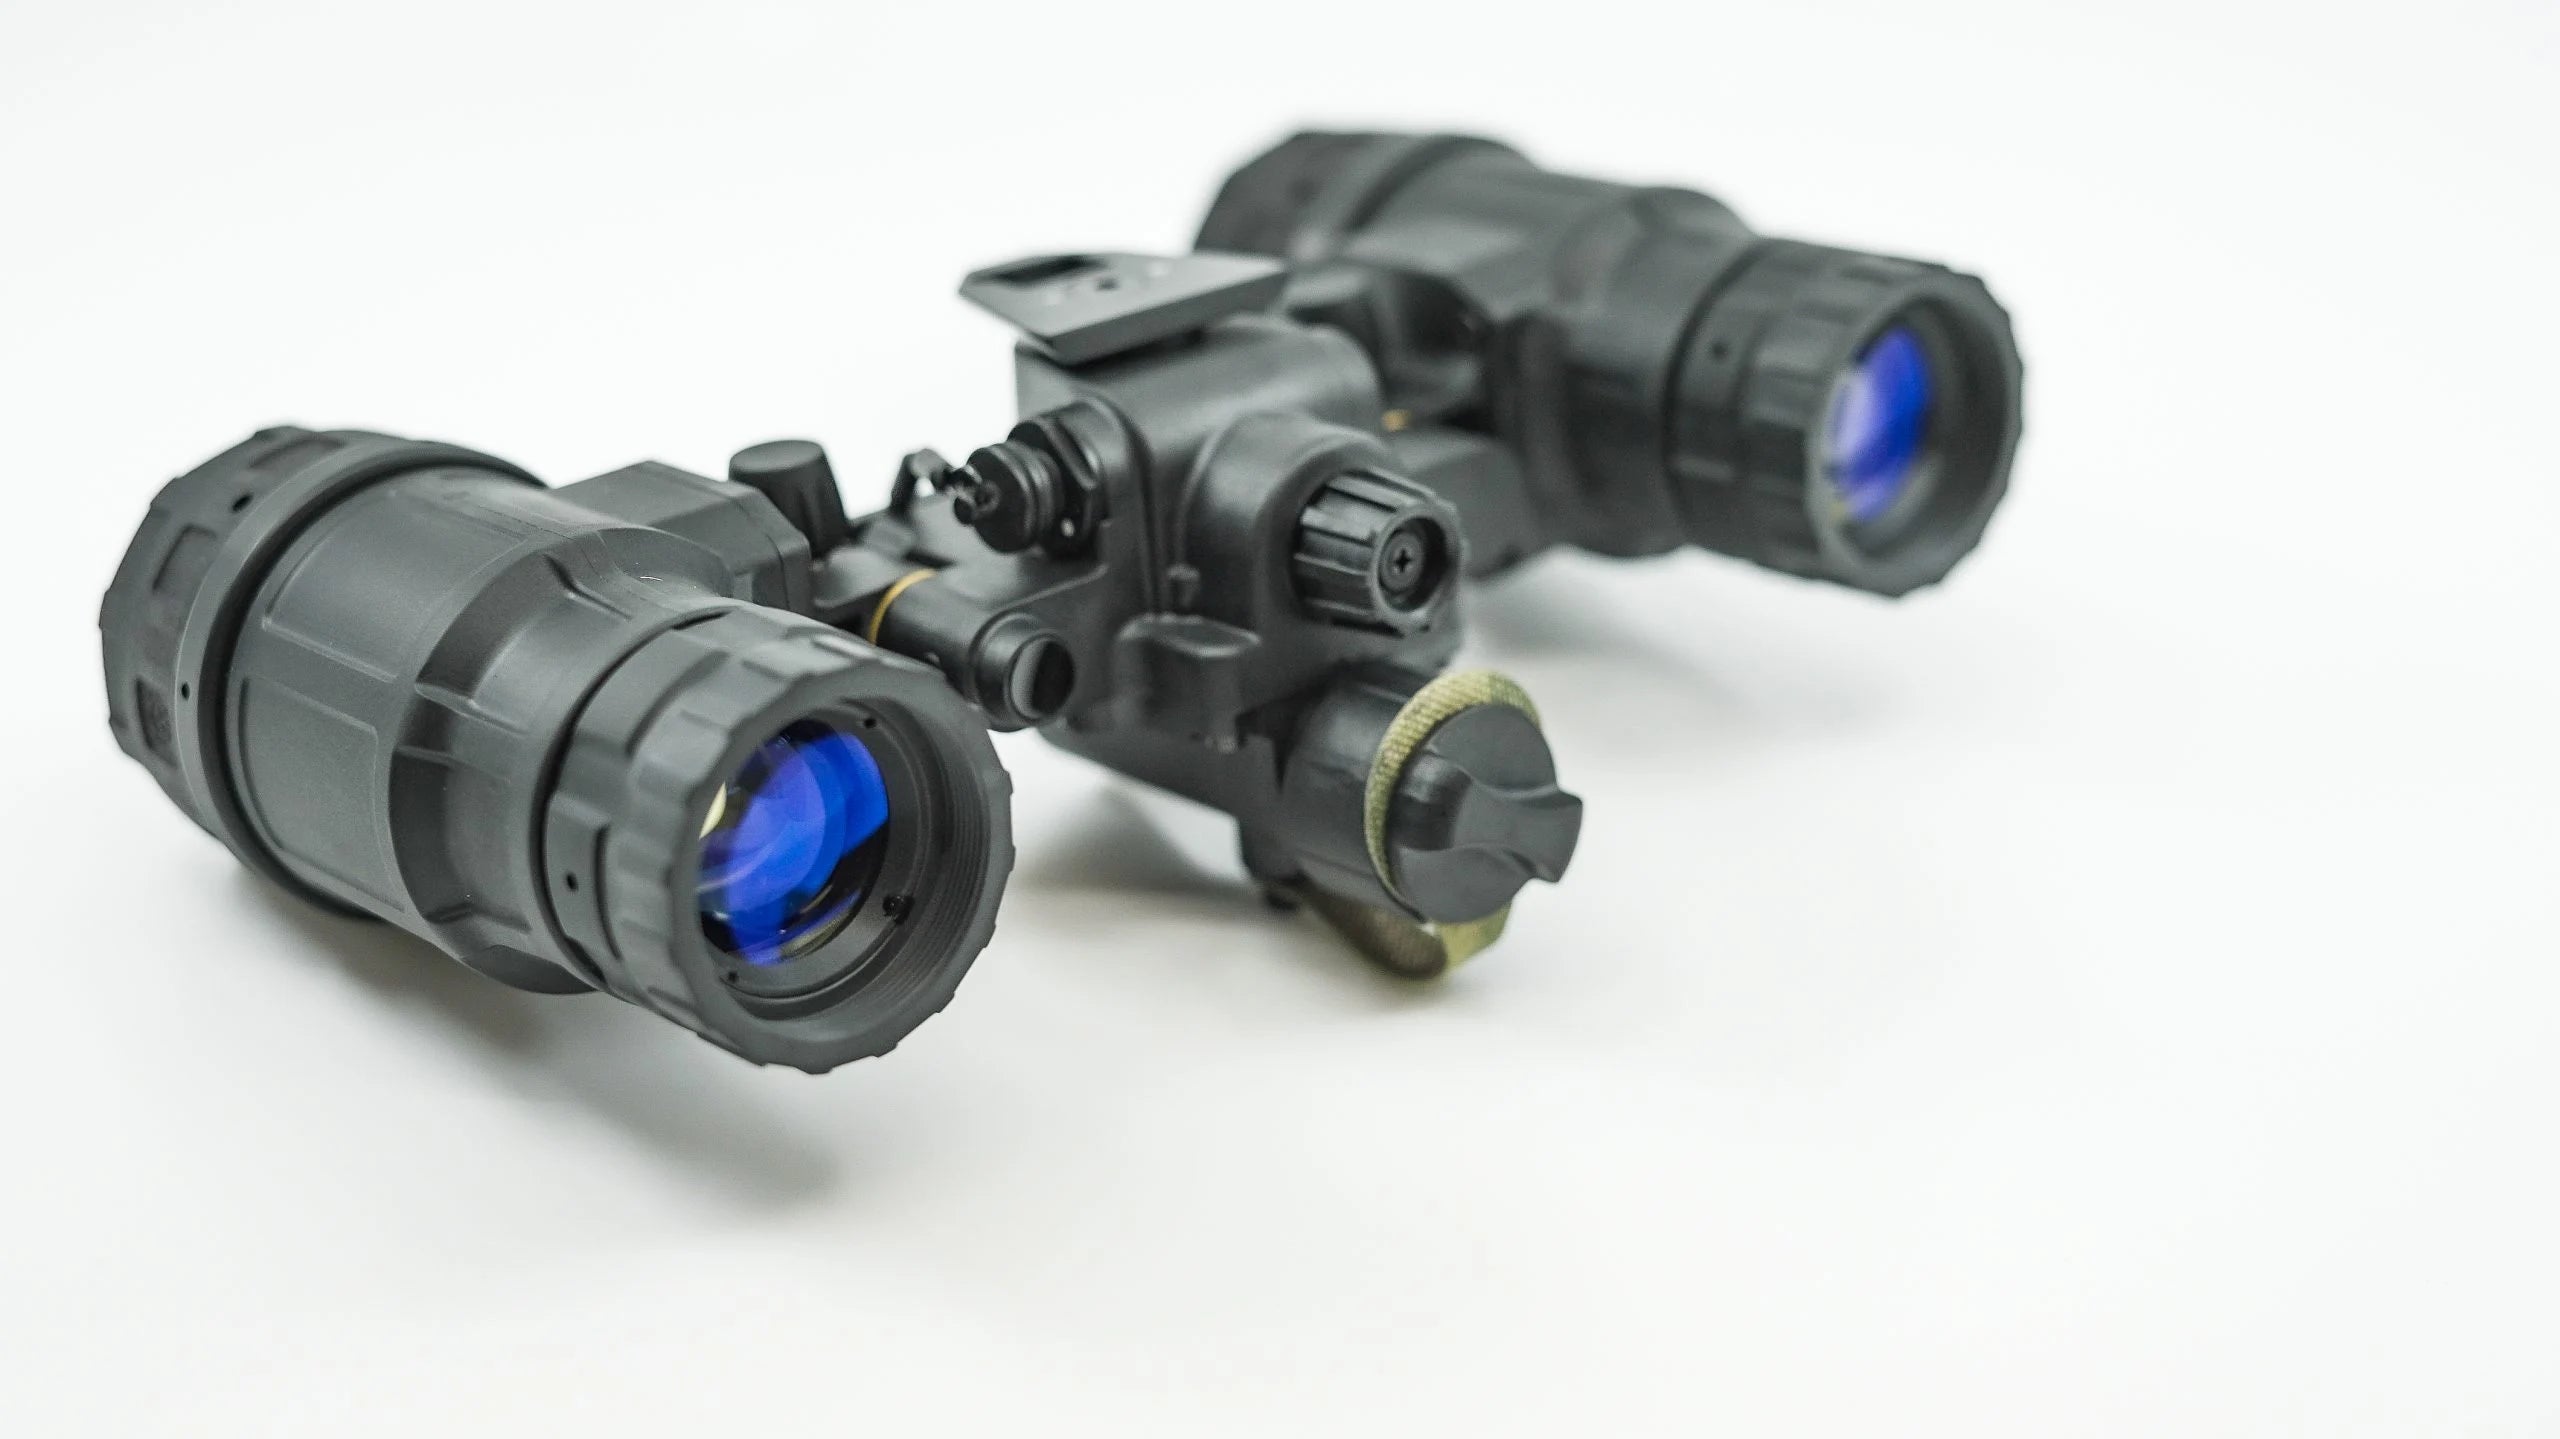 BNVD 1431 MK II Night Vision Goggle L3 - Standard Mil-Spec Optics